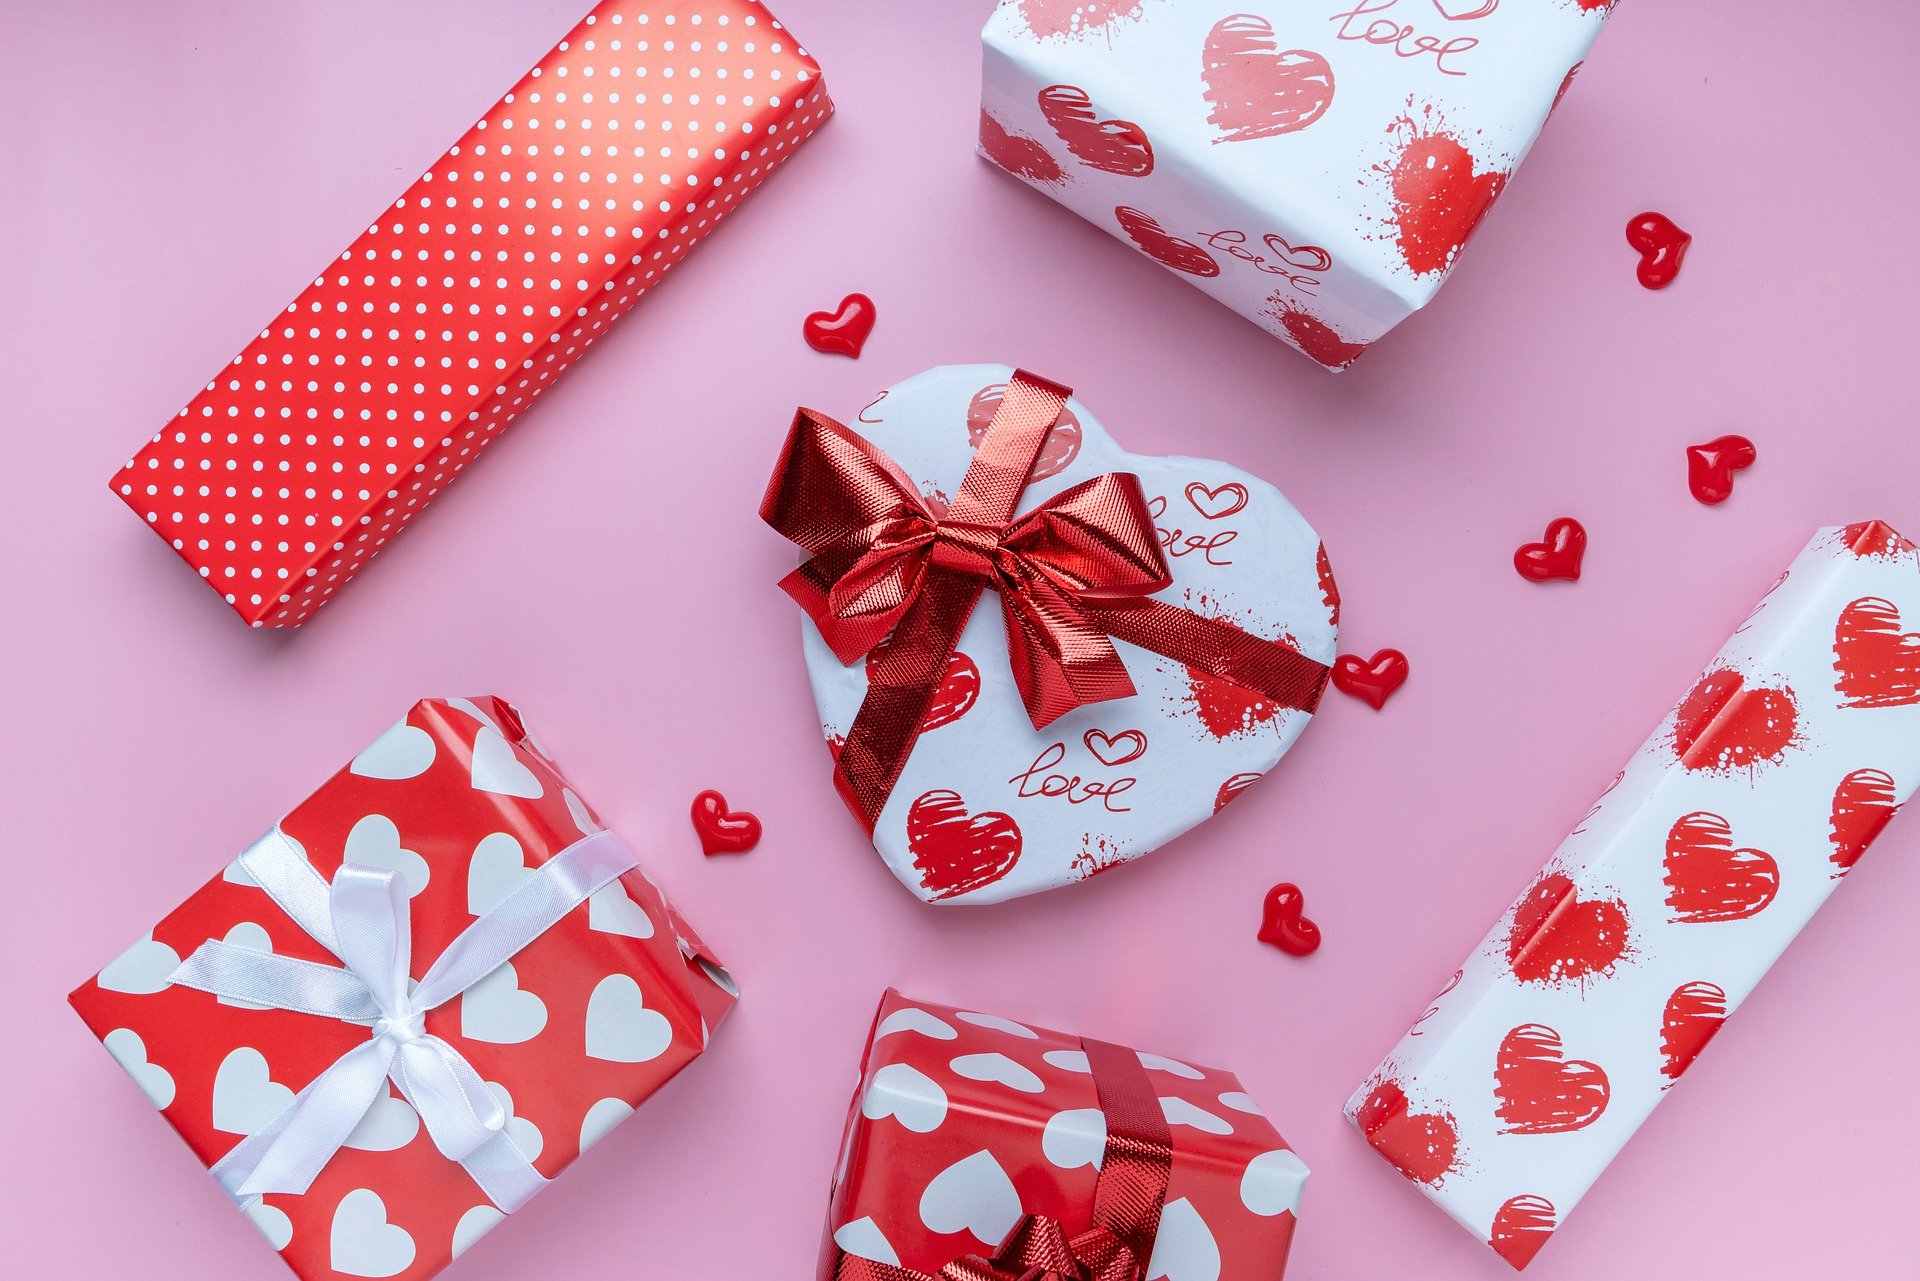 Regalos para mi novia, ¡26 ideas de regalos para mujer que todas deseamos!  